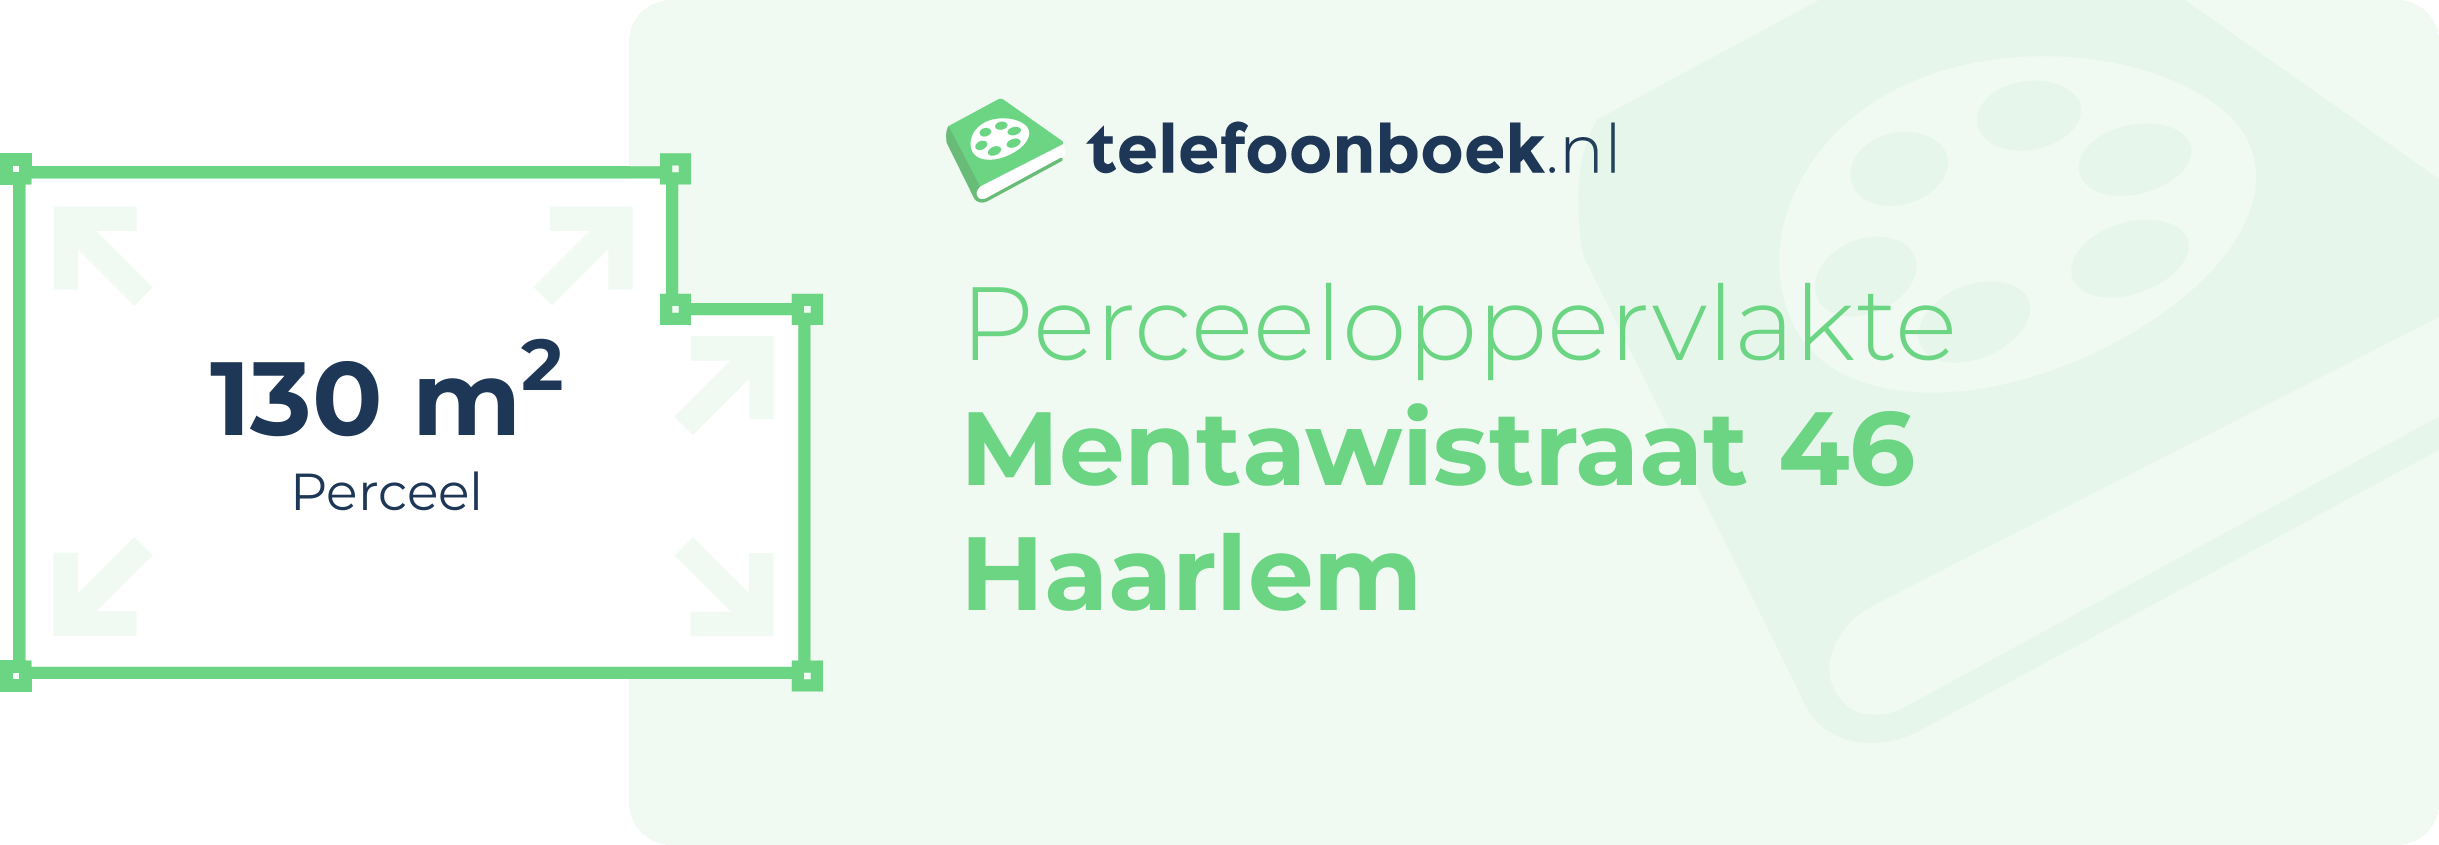 Perceeloppervlakte Mentawistraat 46 Haarlem